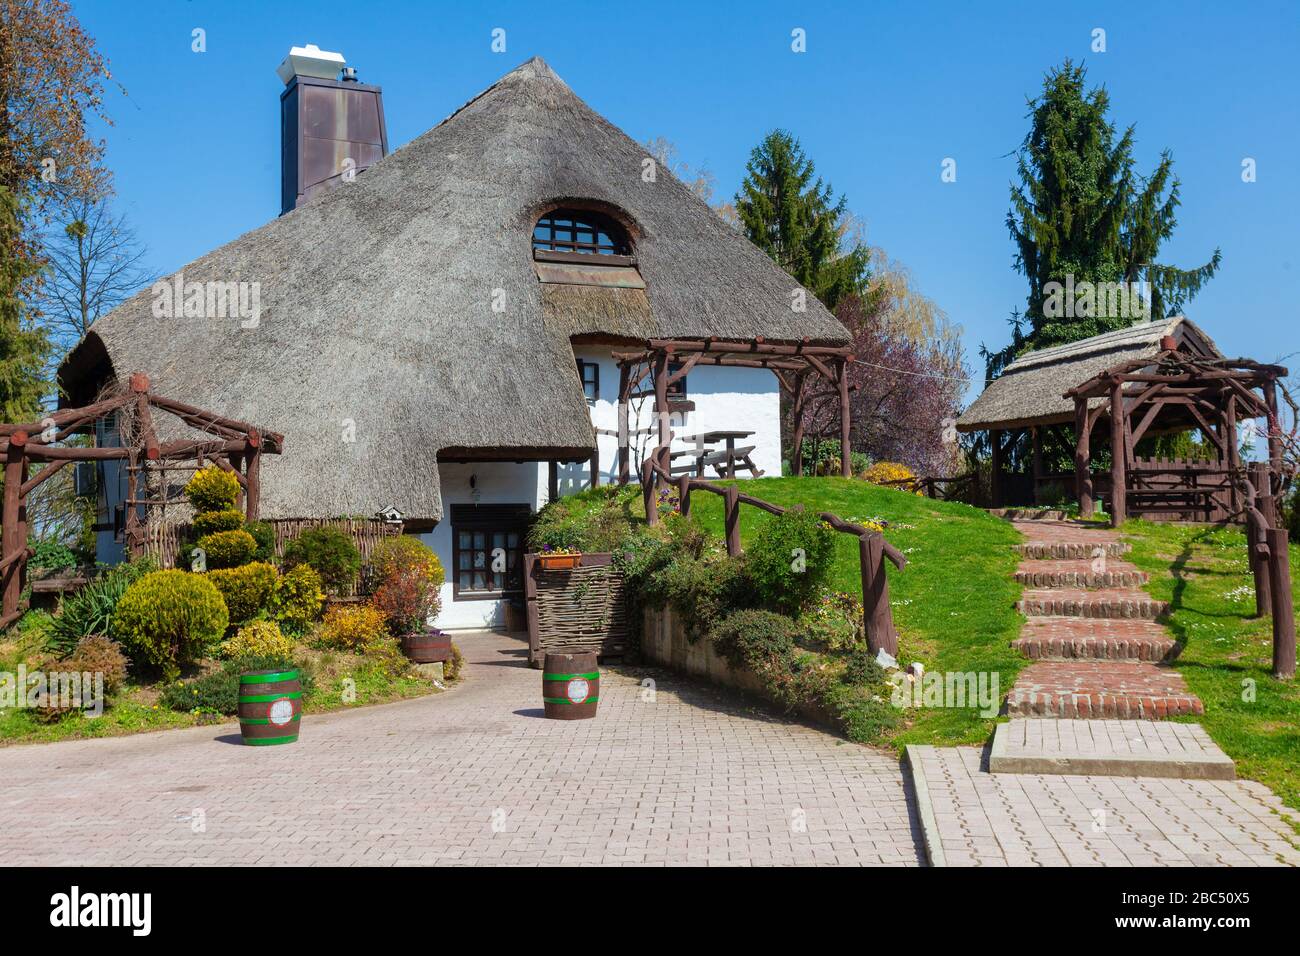 Casa rurale tradizionale con tetto in paglia nella regione di Podravina Della Croazia (PRC) - Ristorante Podravska klet sulla RPC Foto Stock